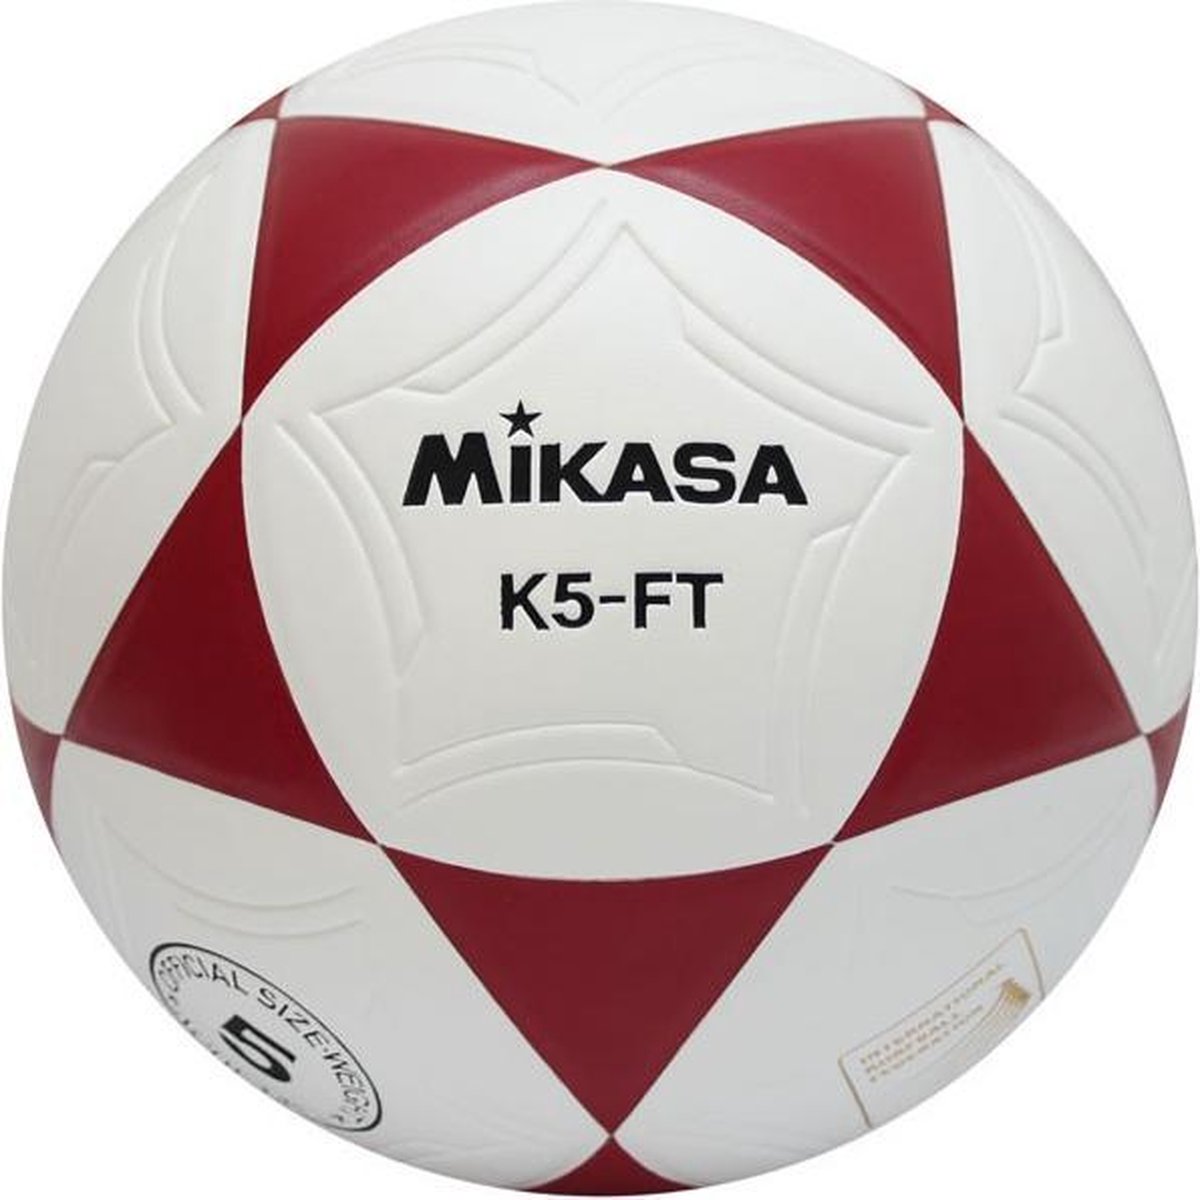 Mikasa K5-FT Korfbal - Korfballen - rood/wit